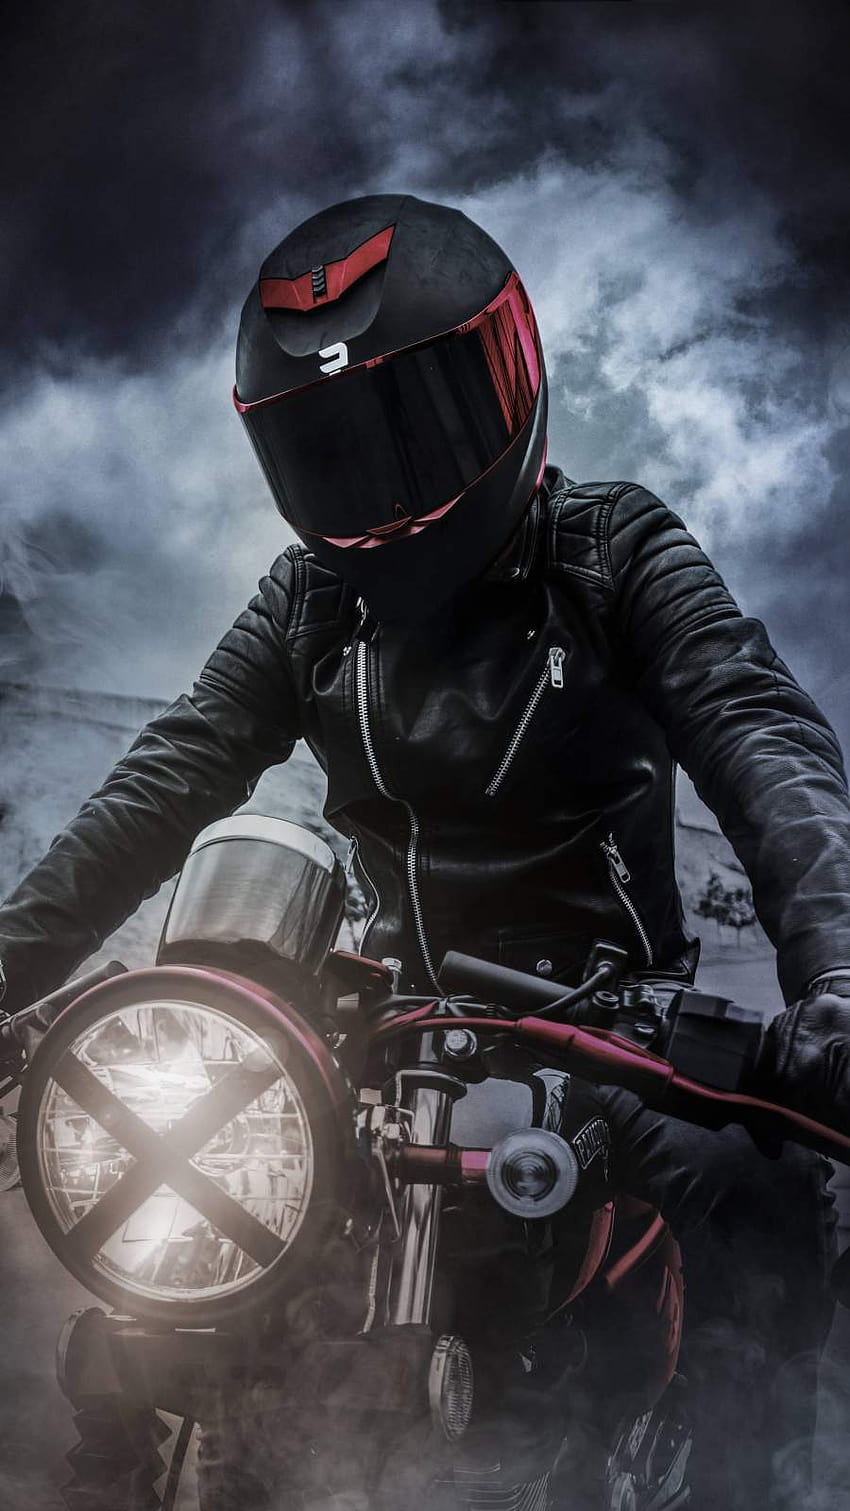 Motorcycle Rider IPhone, motorcycle helmet iphone HD phone wallpaper